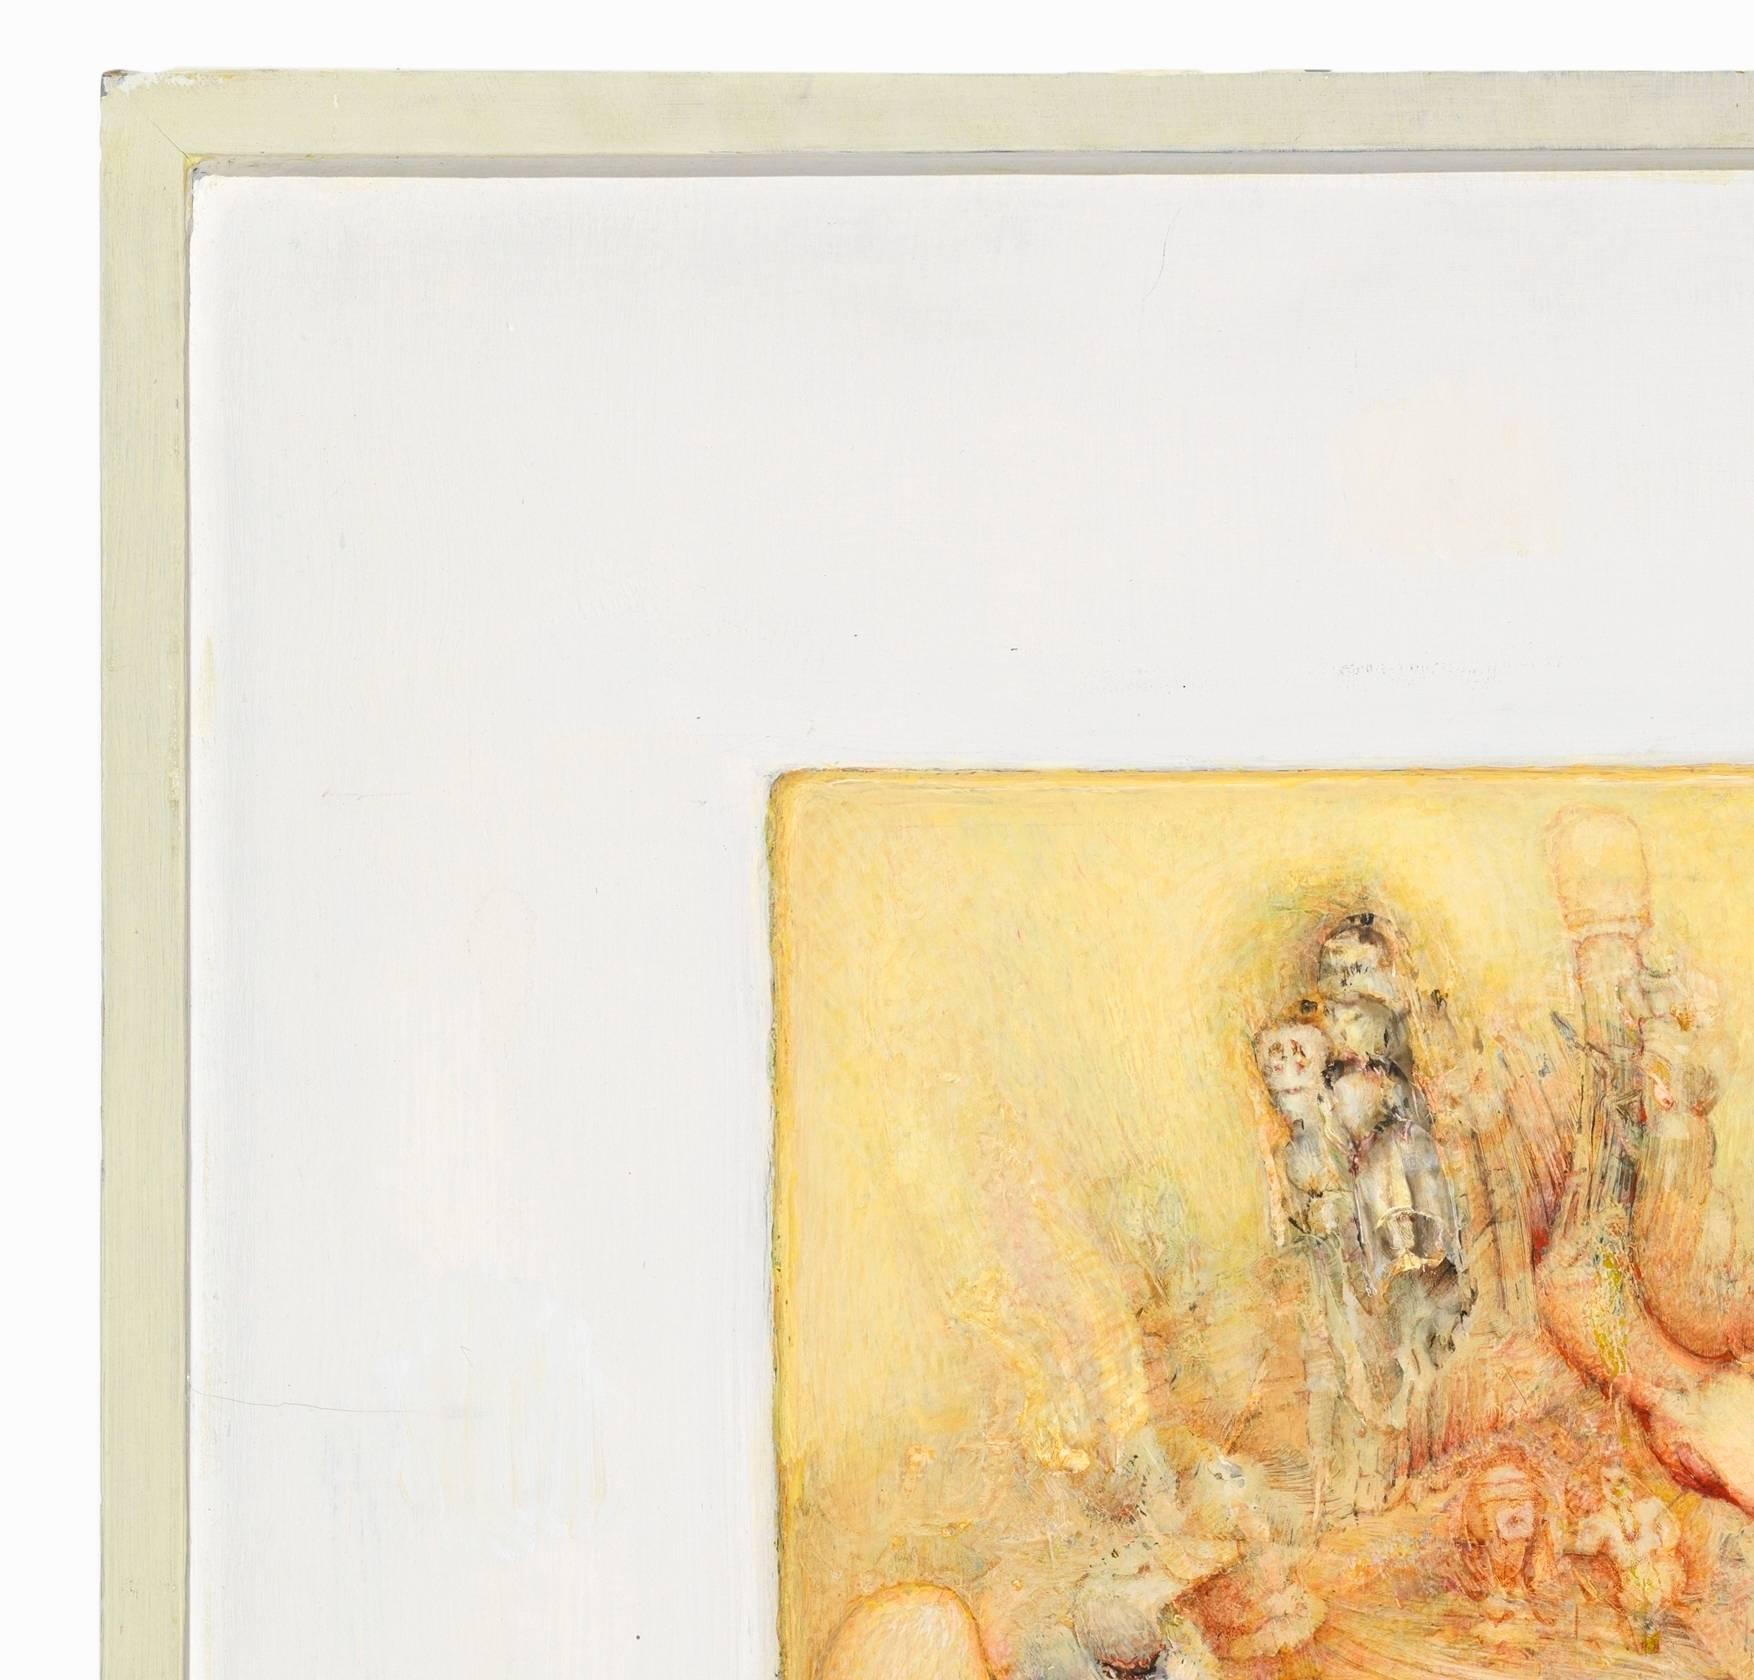 GREGORY GILLESPIE (1936-2000)
Der Traum von Goldie, 1999
Öl auf Platte
20 1/8 x 19 5/8 Zoll
Verso signiert: Greg Gillespie
Original-Rahmen

PROVENIENZ

Forum Gallery, New York, New York (Etikett verso)
Nielson Gallery, Boston,